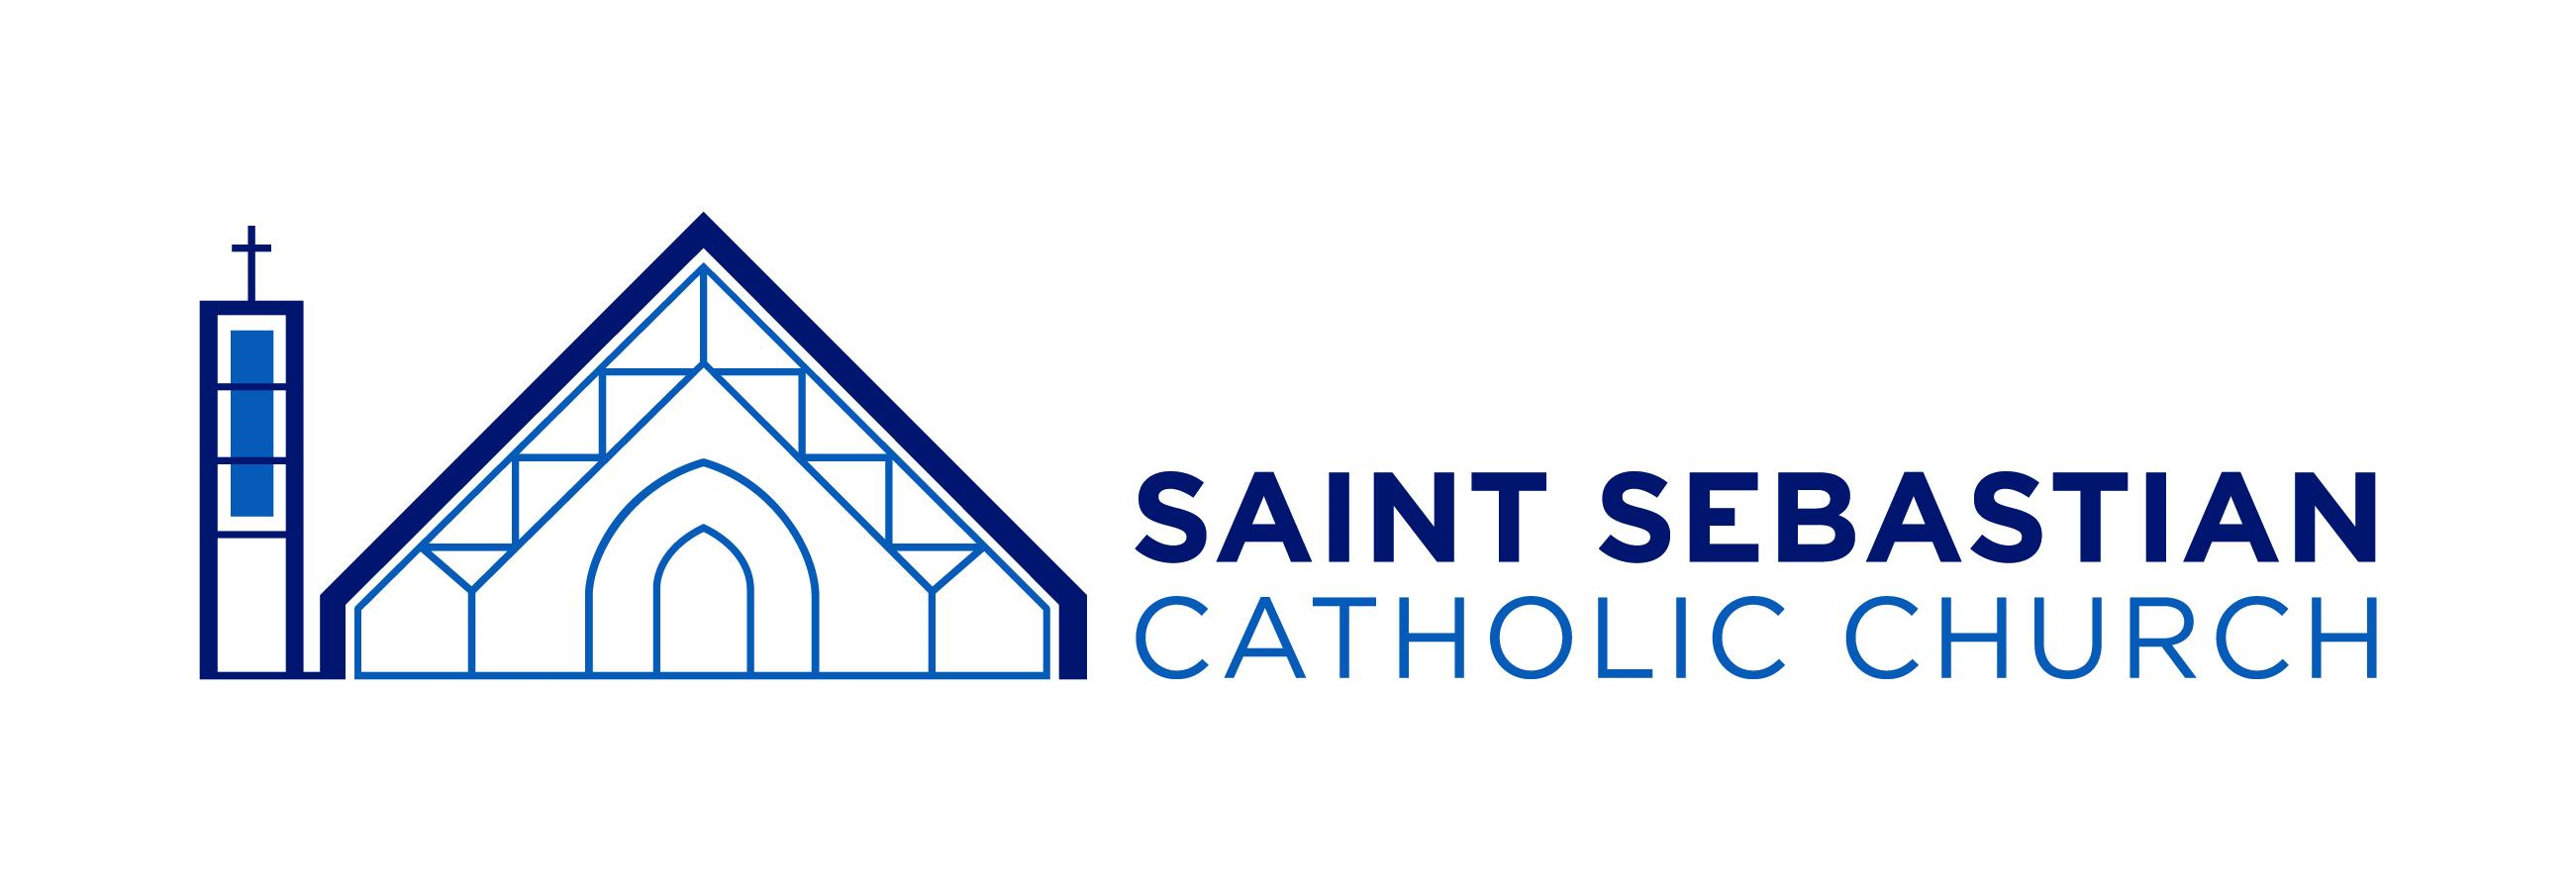 St. Sebastian Catholic Church Logo